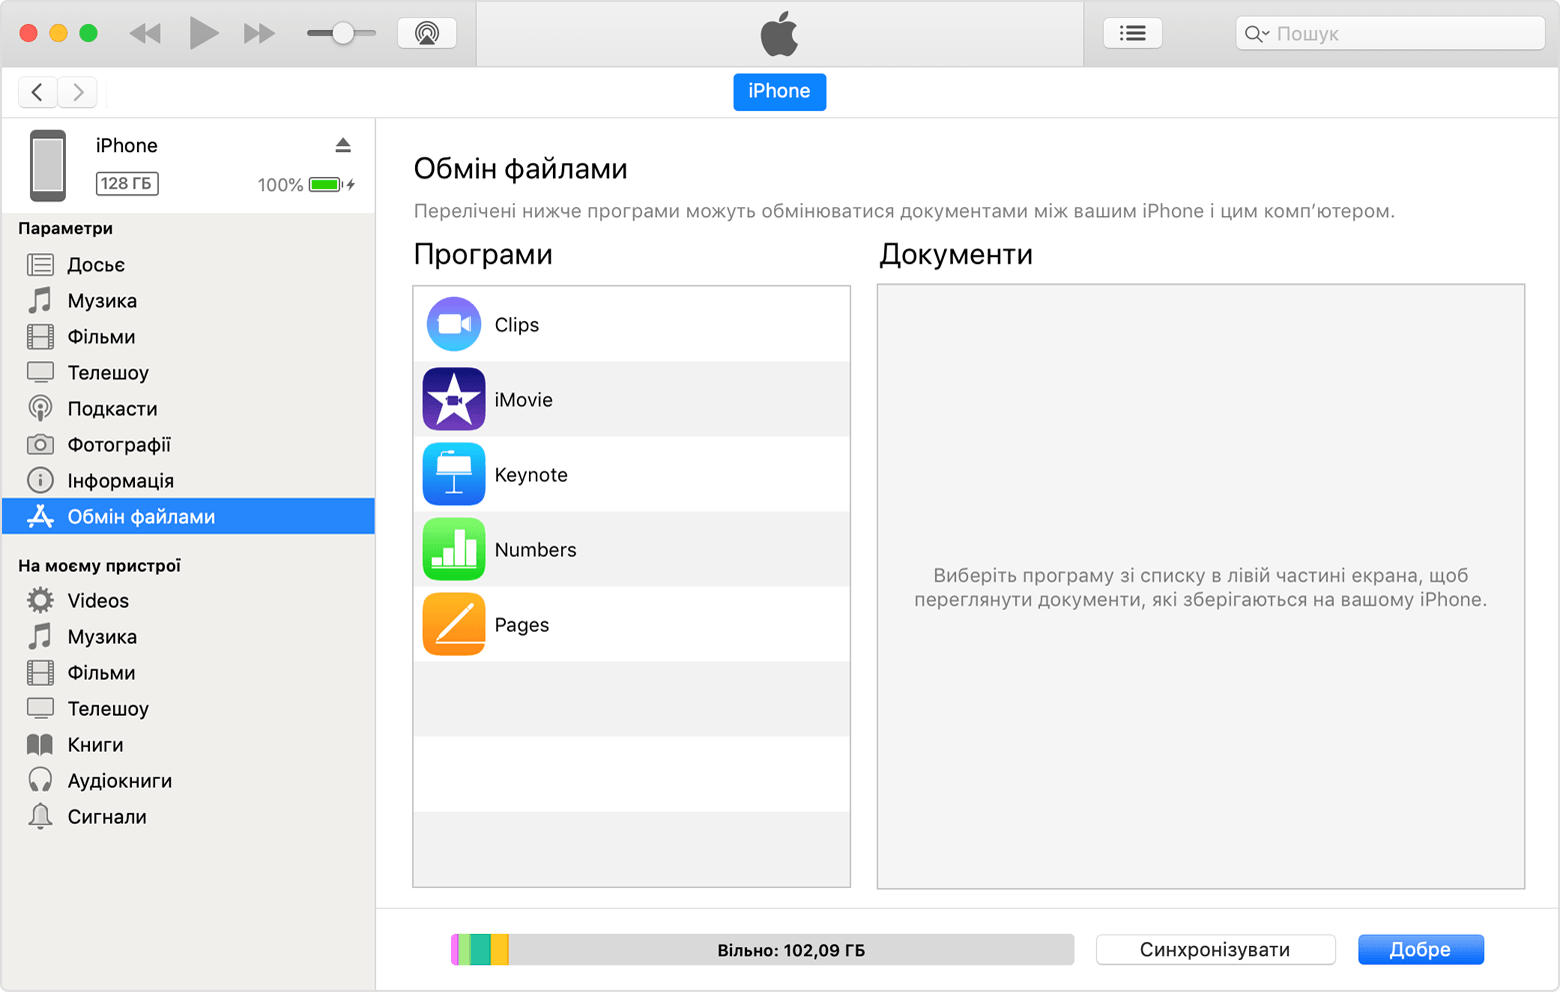 Вікно iTunes з підключеним iPhone і вибраним зі списку пунктом «Обмін файлами».